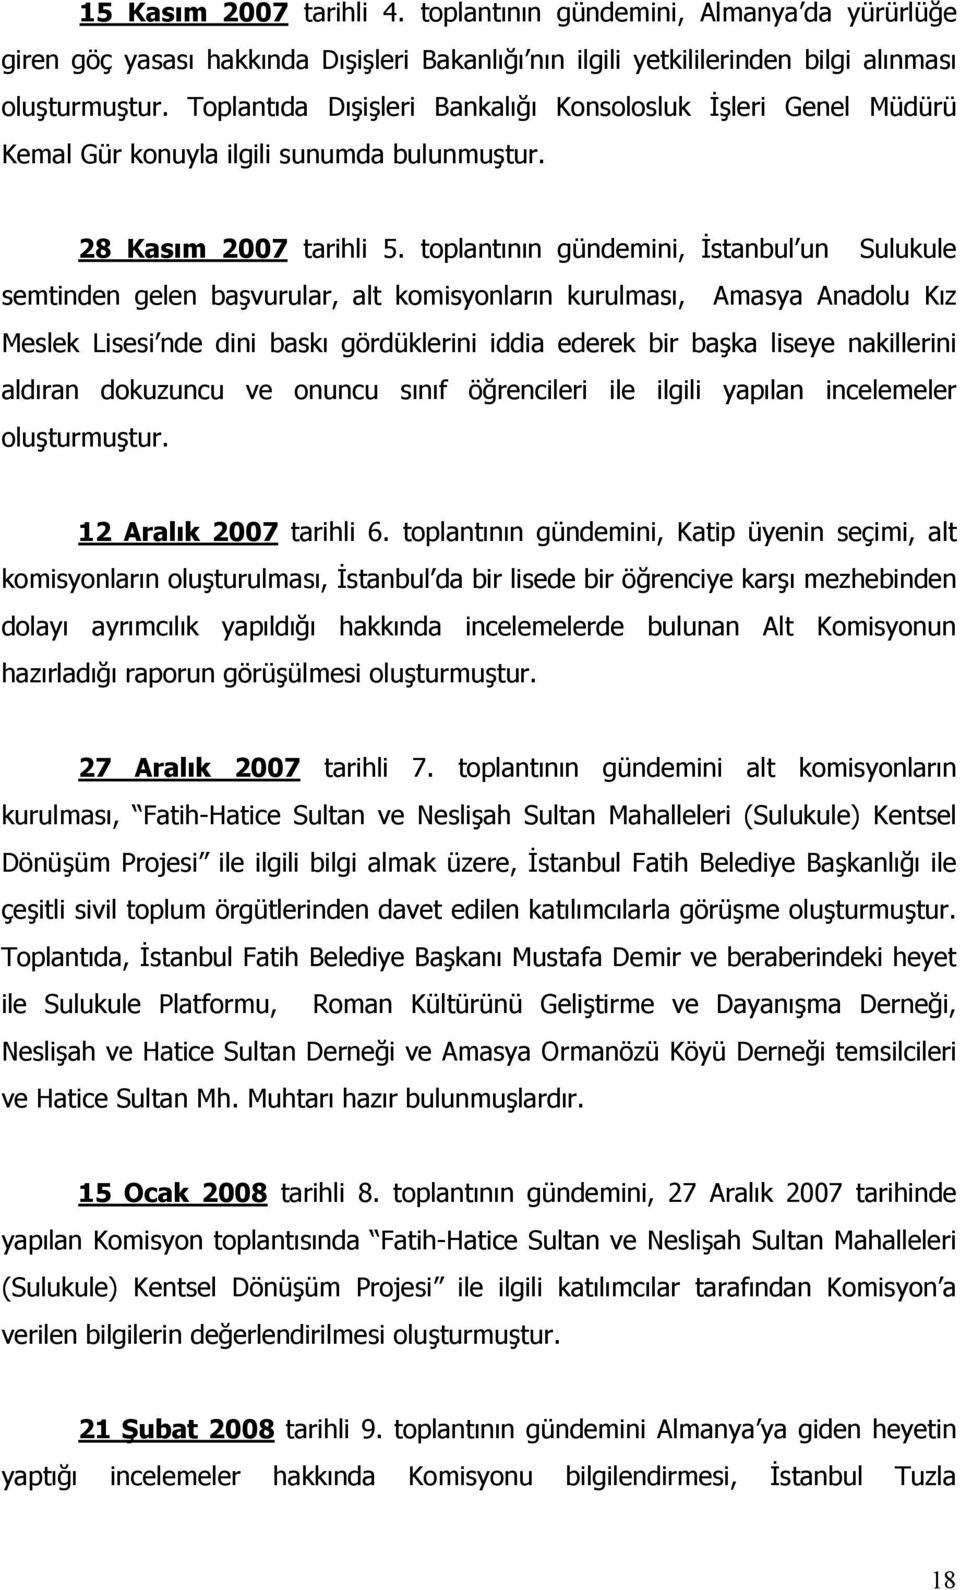 toplantının gündemini, İstanbul un Sulukule semtinden gelen başvurular, alt komisyonların kurulması, Amasya Anadolu Kız Meslek Lisesi nde dini baskı gördüklerini iddia ederek bir başka liseye